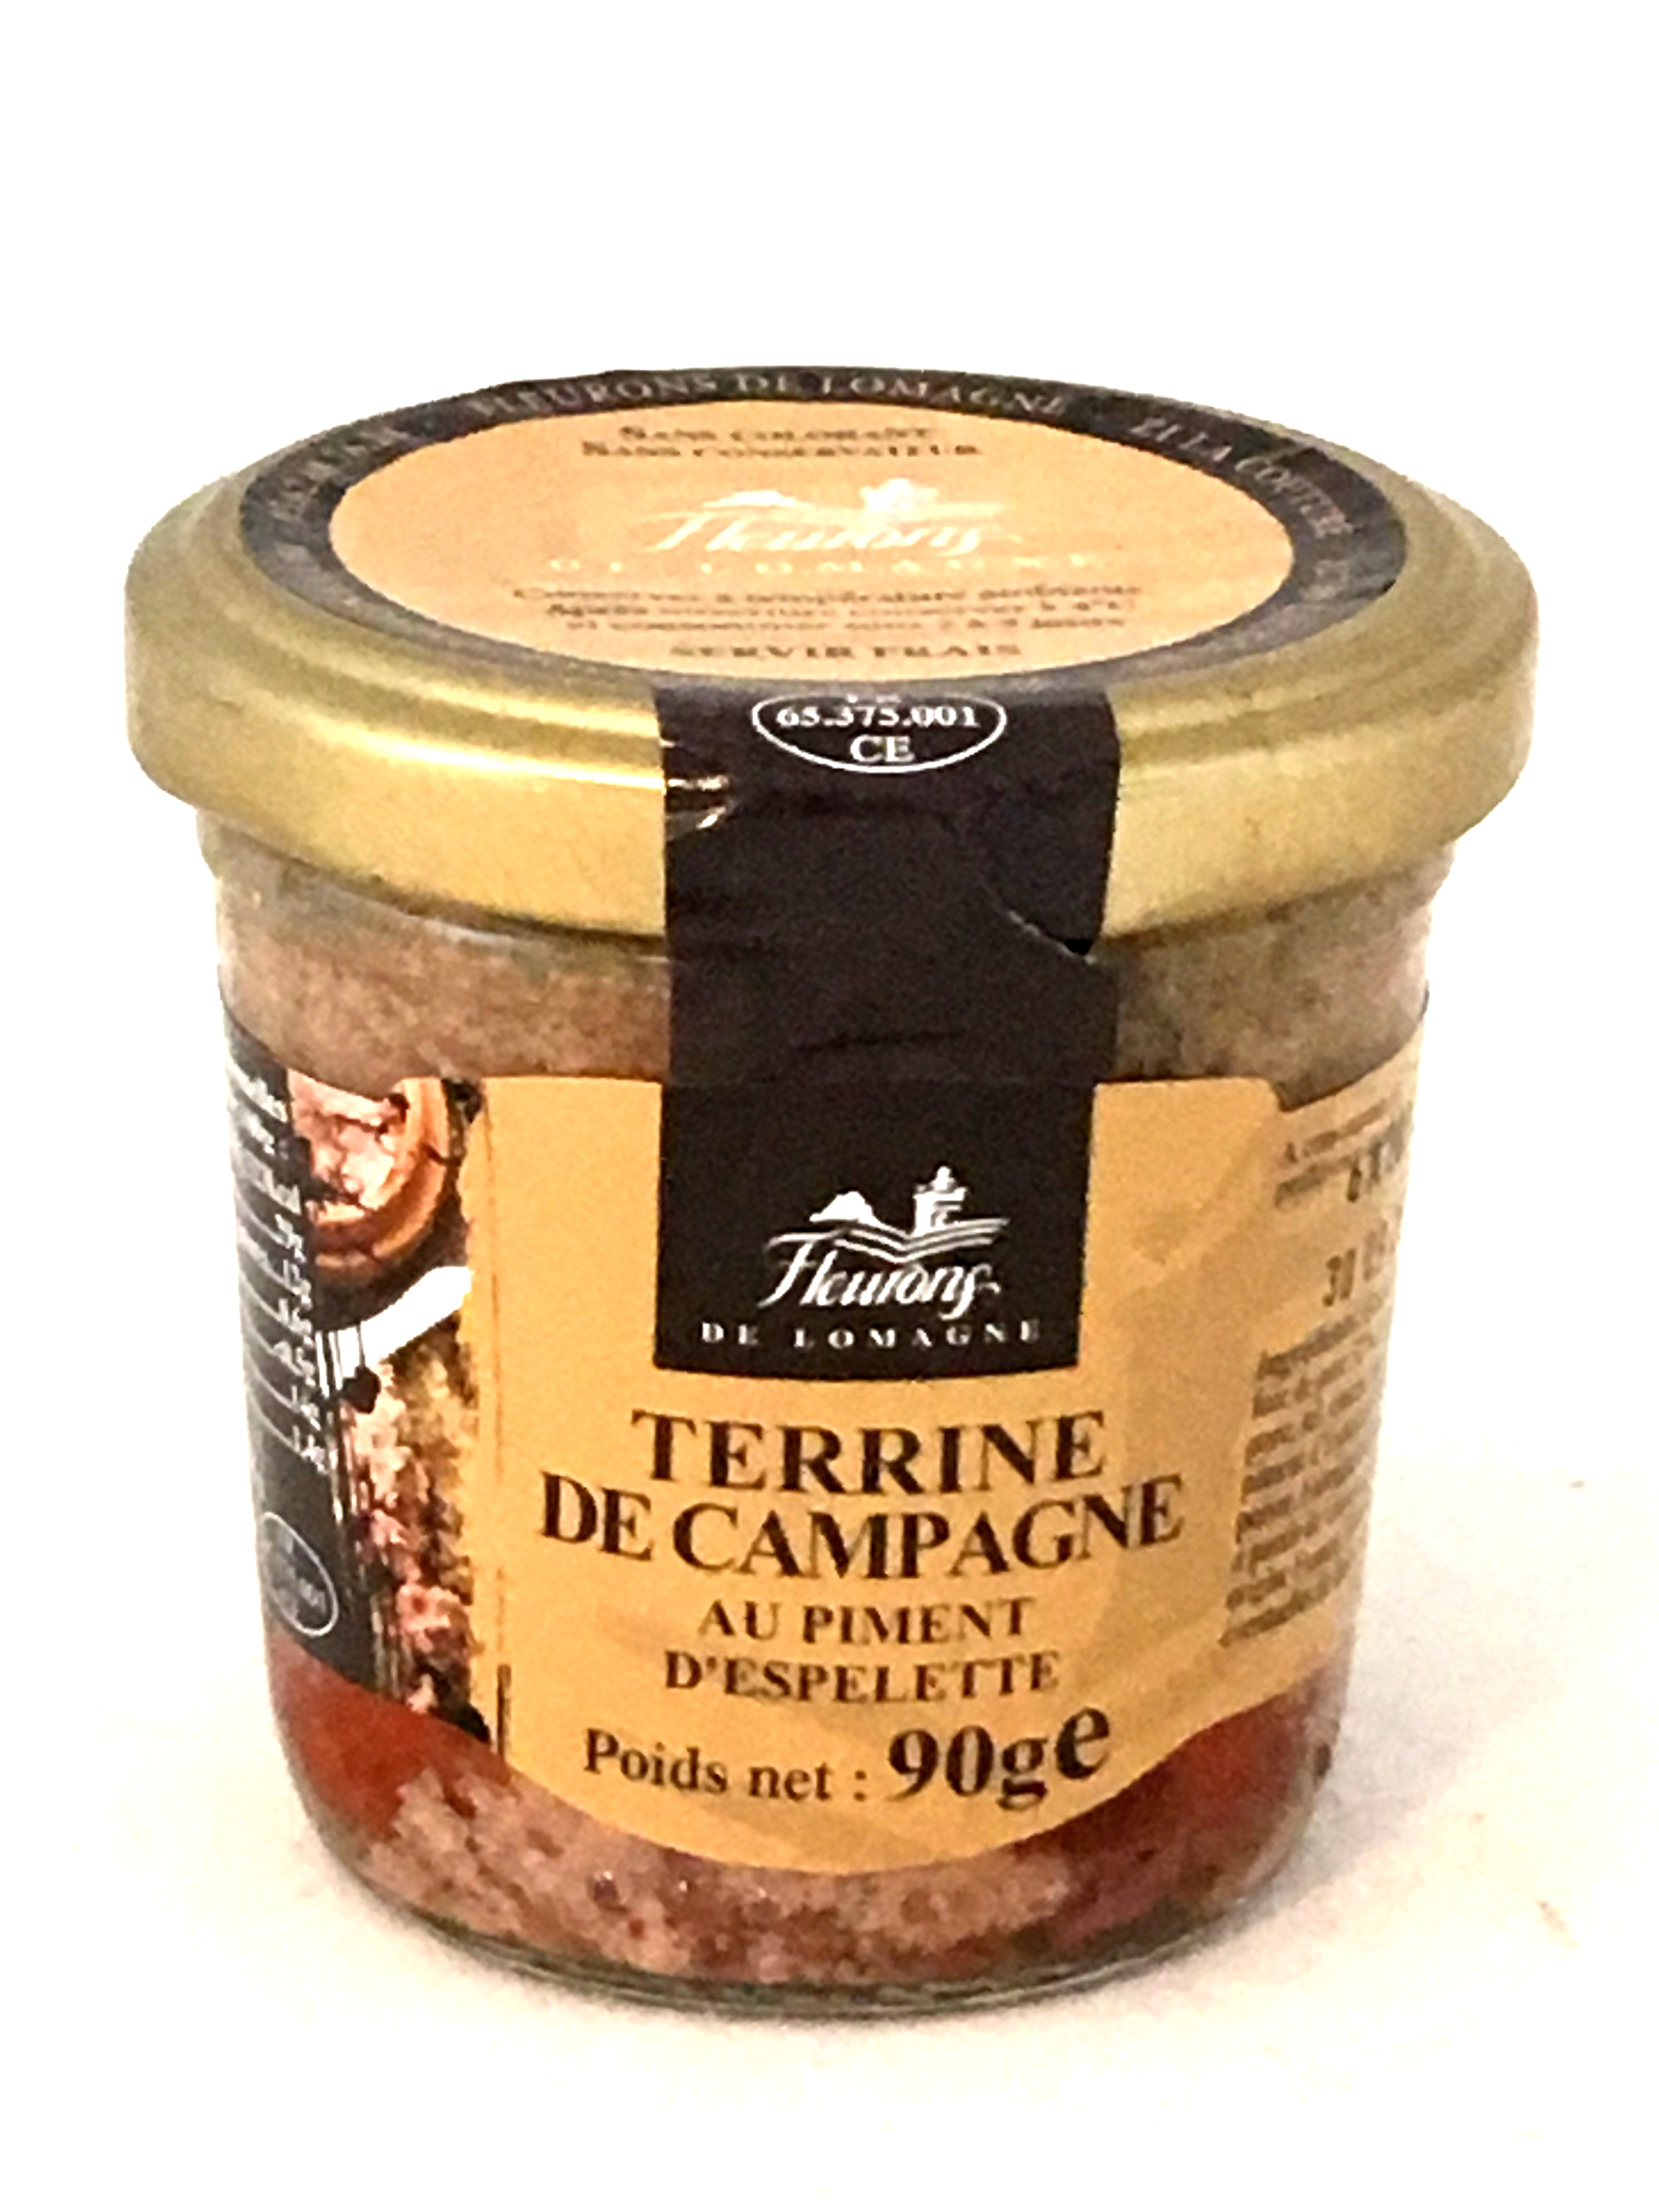 Terrine de campagne au piment d'Espelette 90g (bocal)